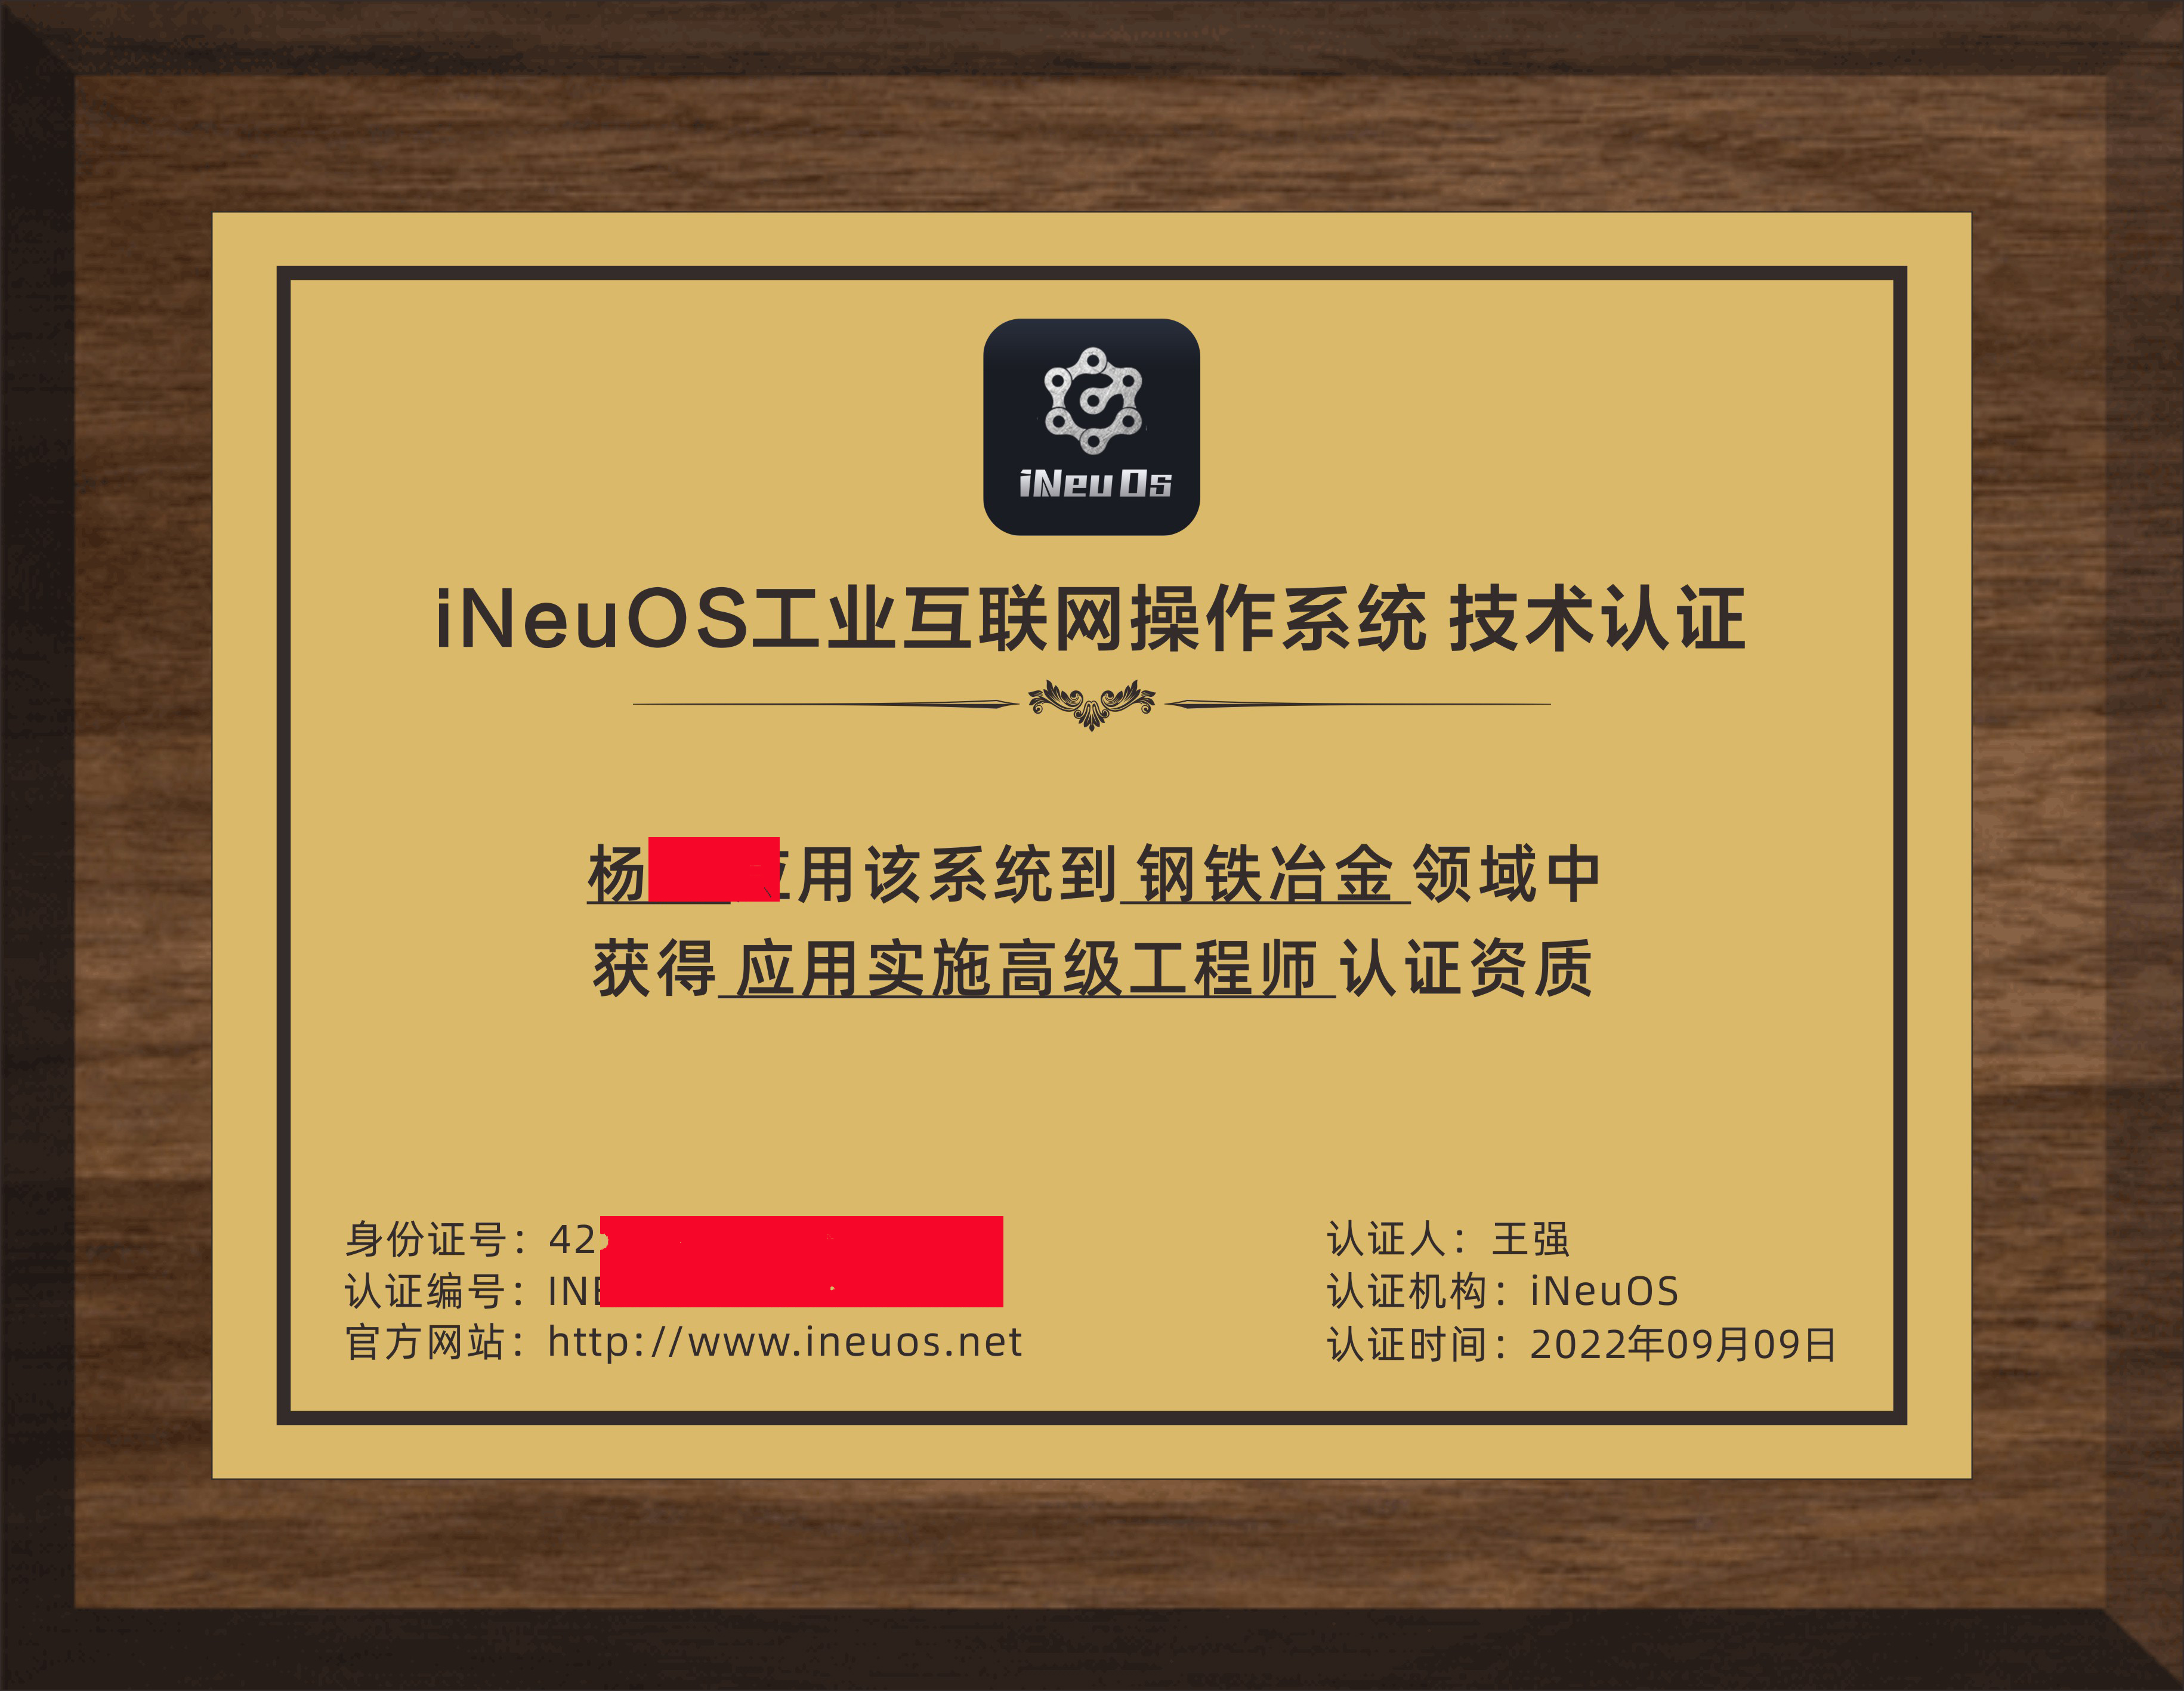 iNeuOS工业互联网操作系统，面向4个领域颁发第一批技术认证资质